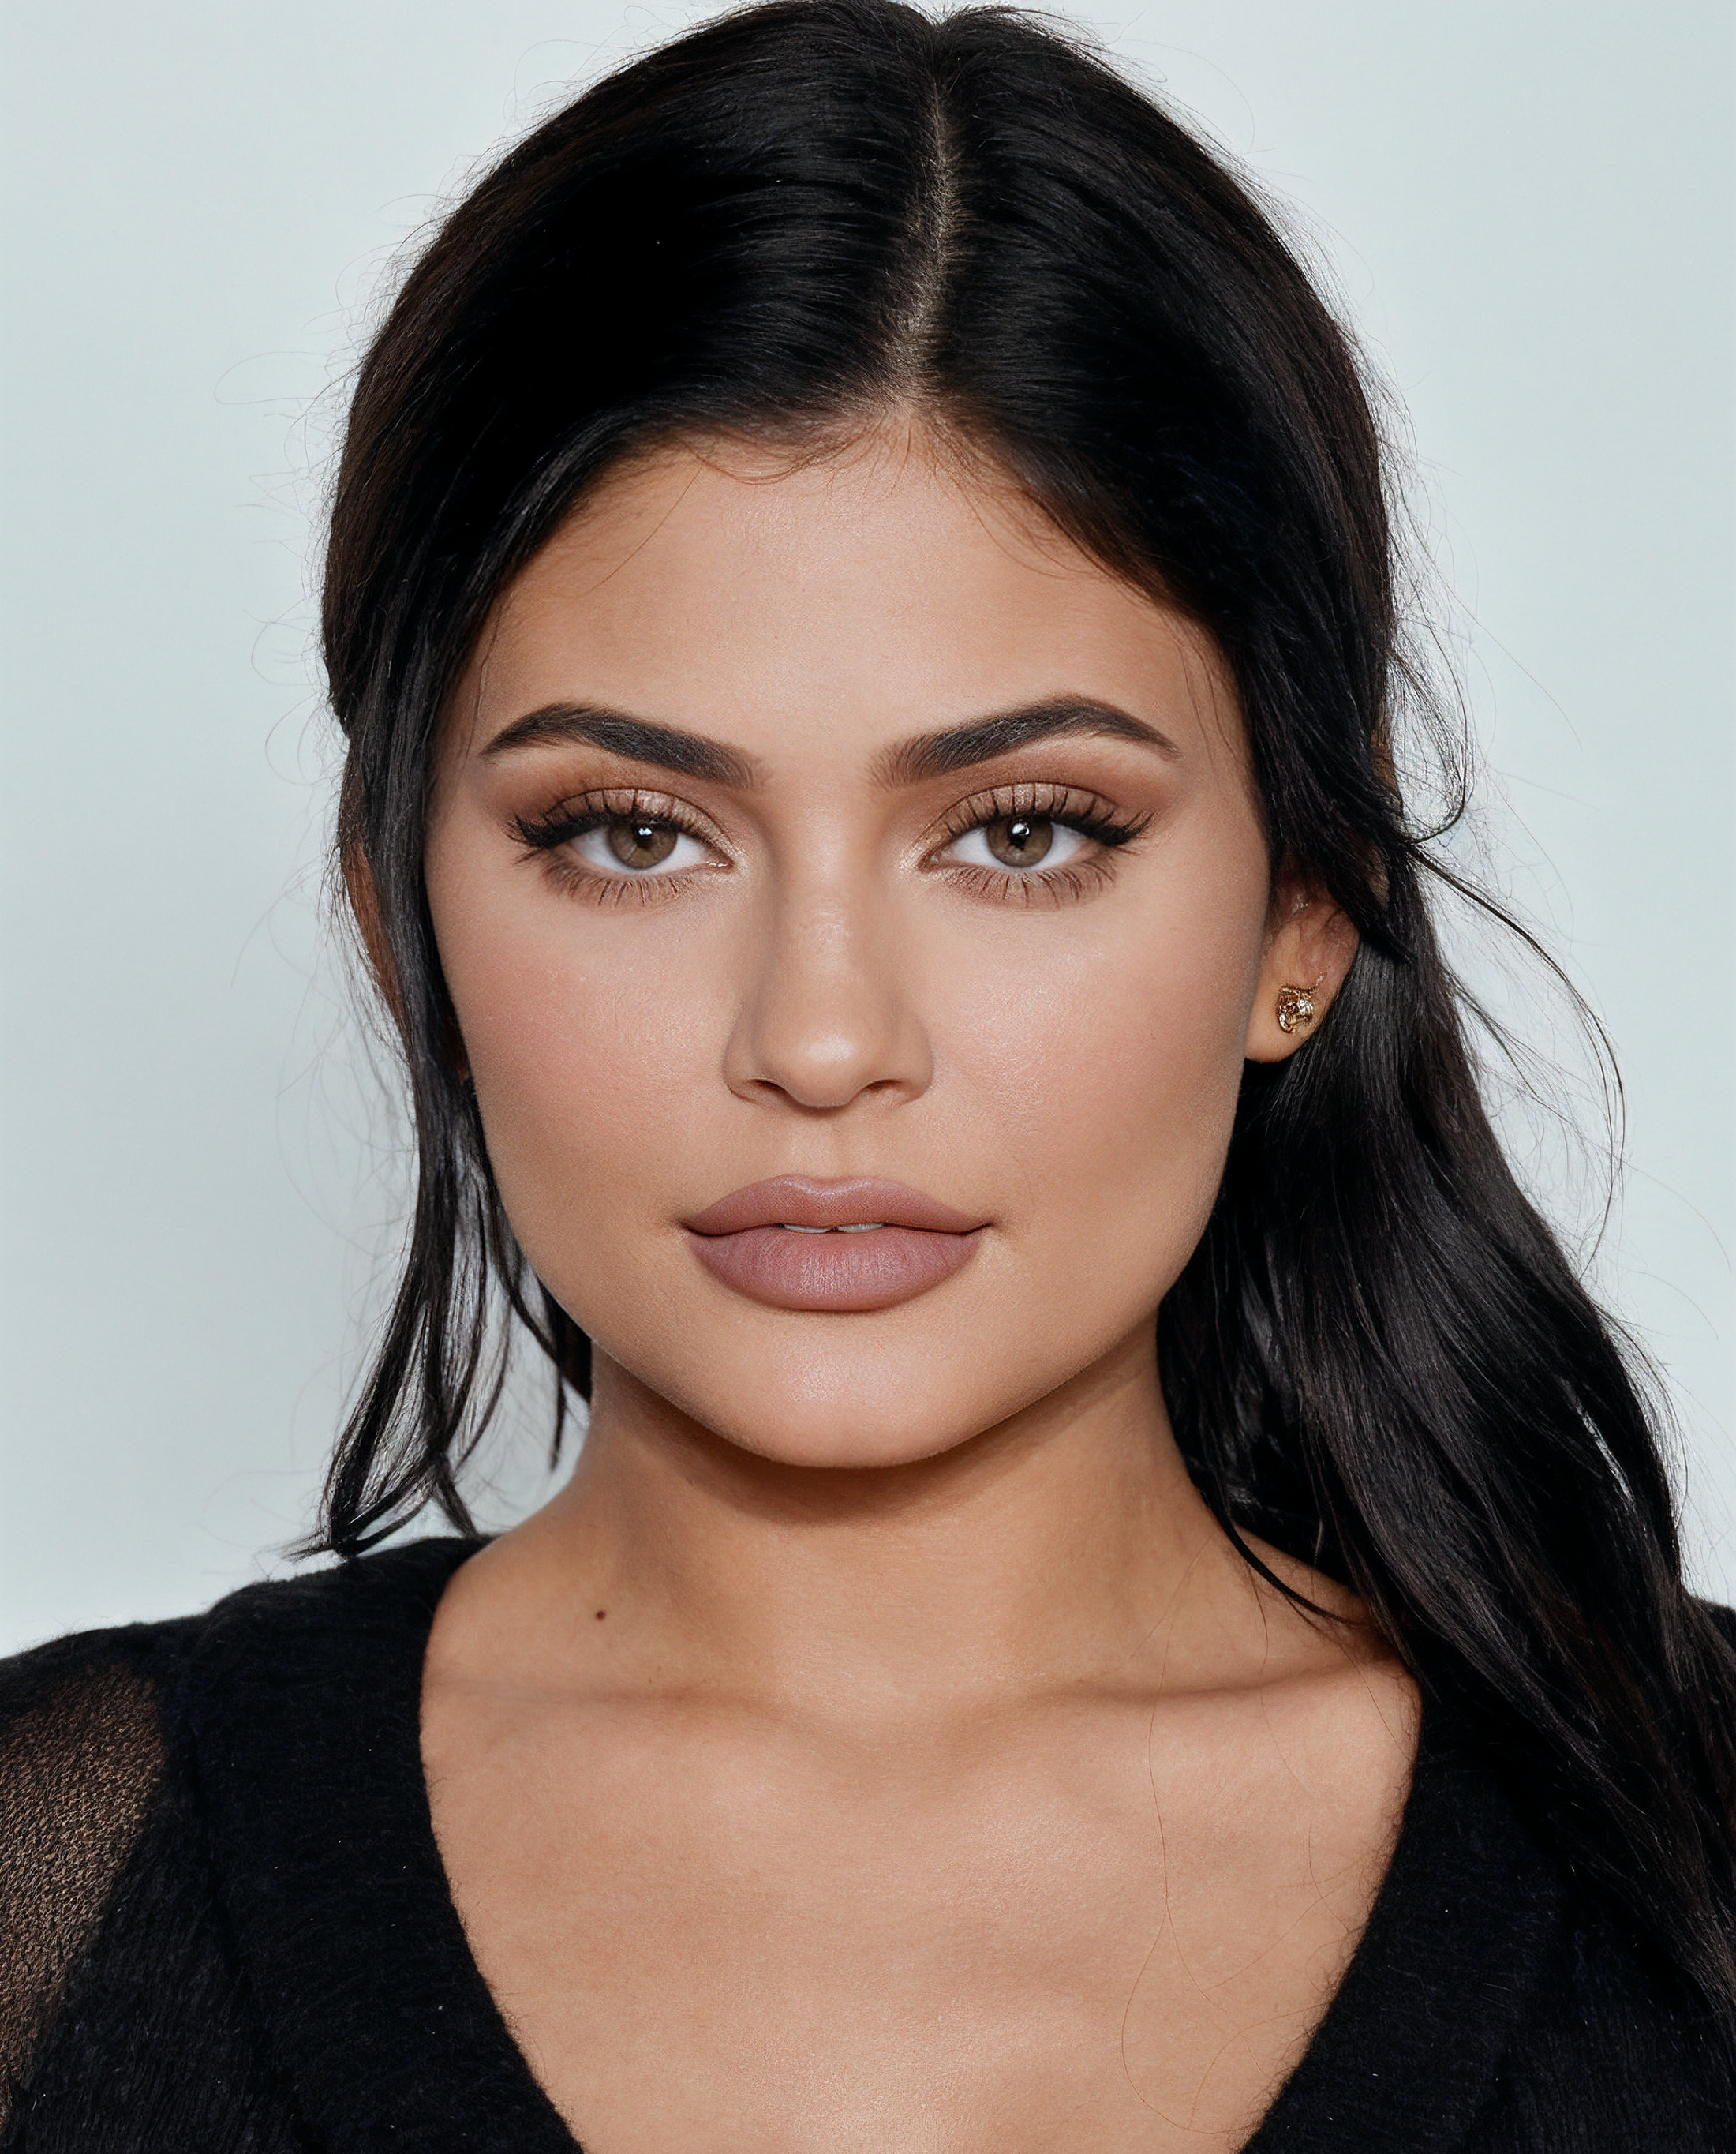 Kylie Jenner image by Zojix